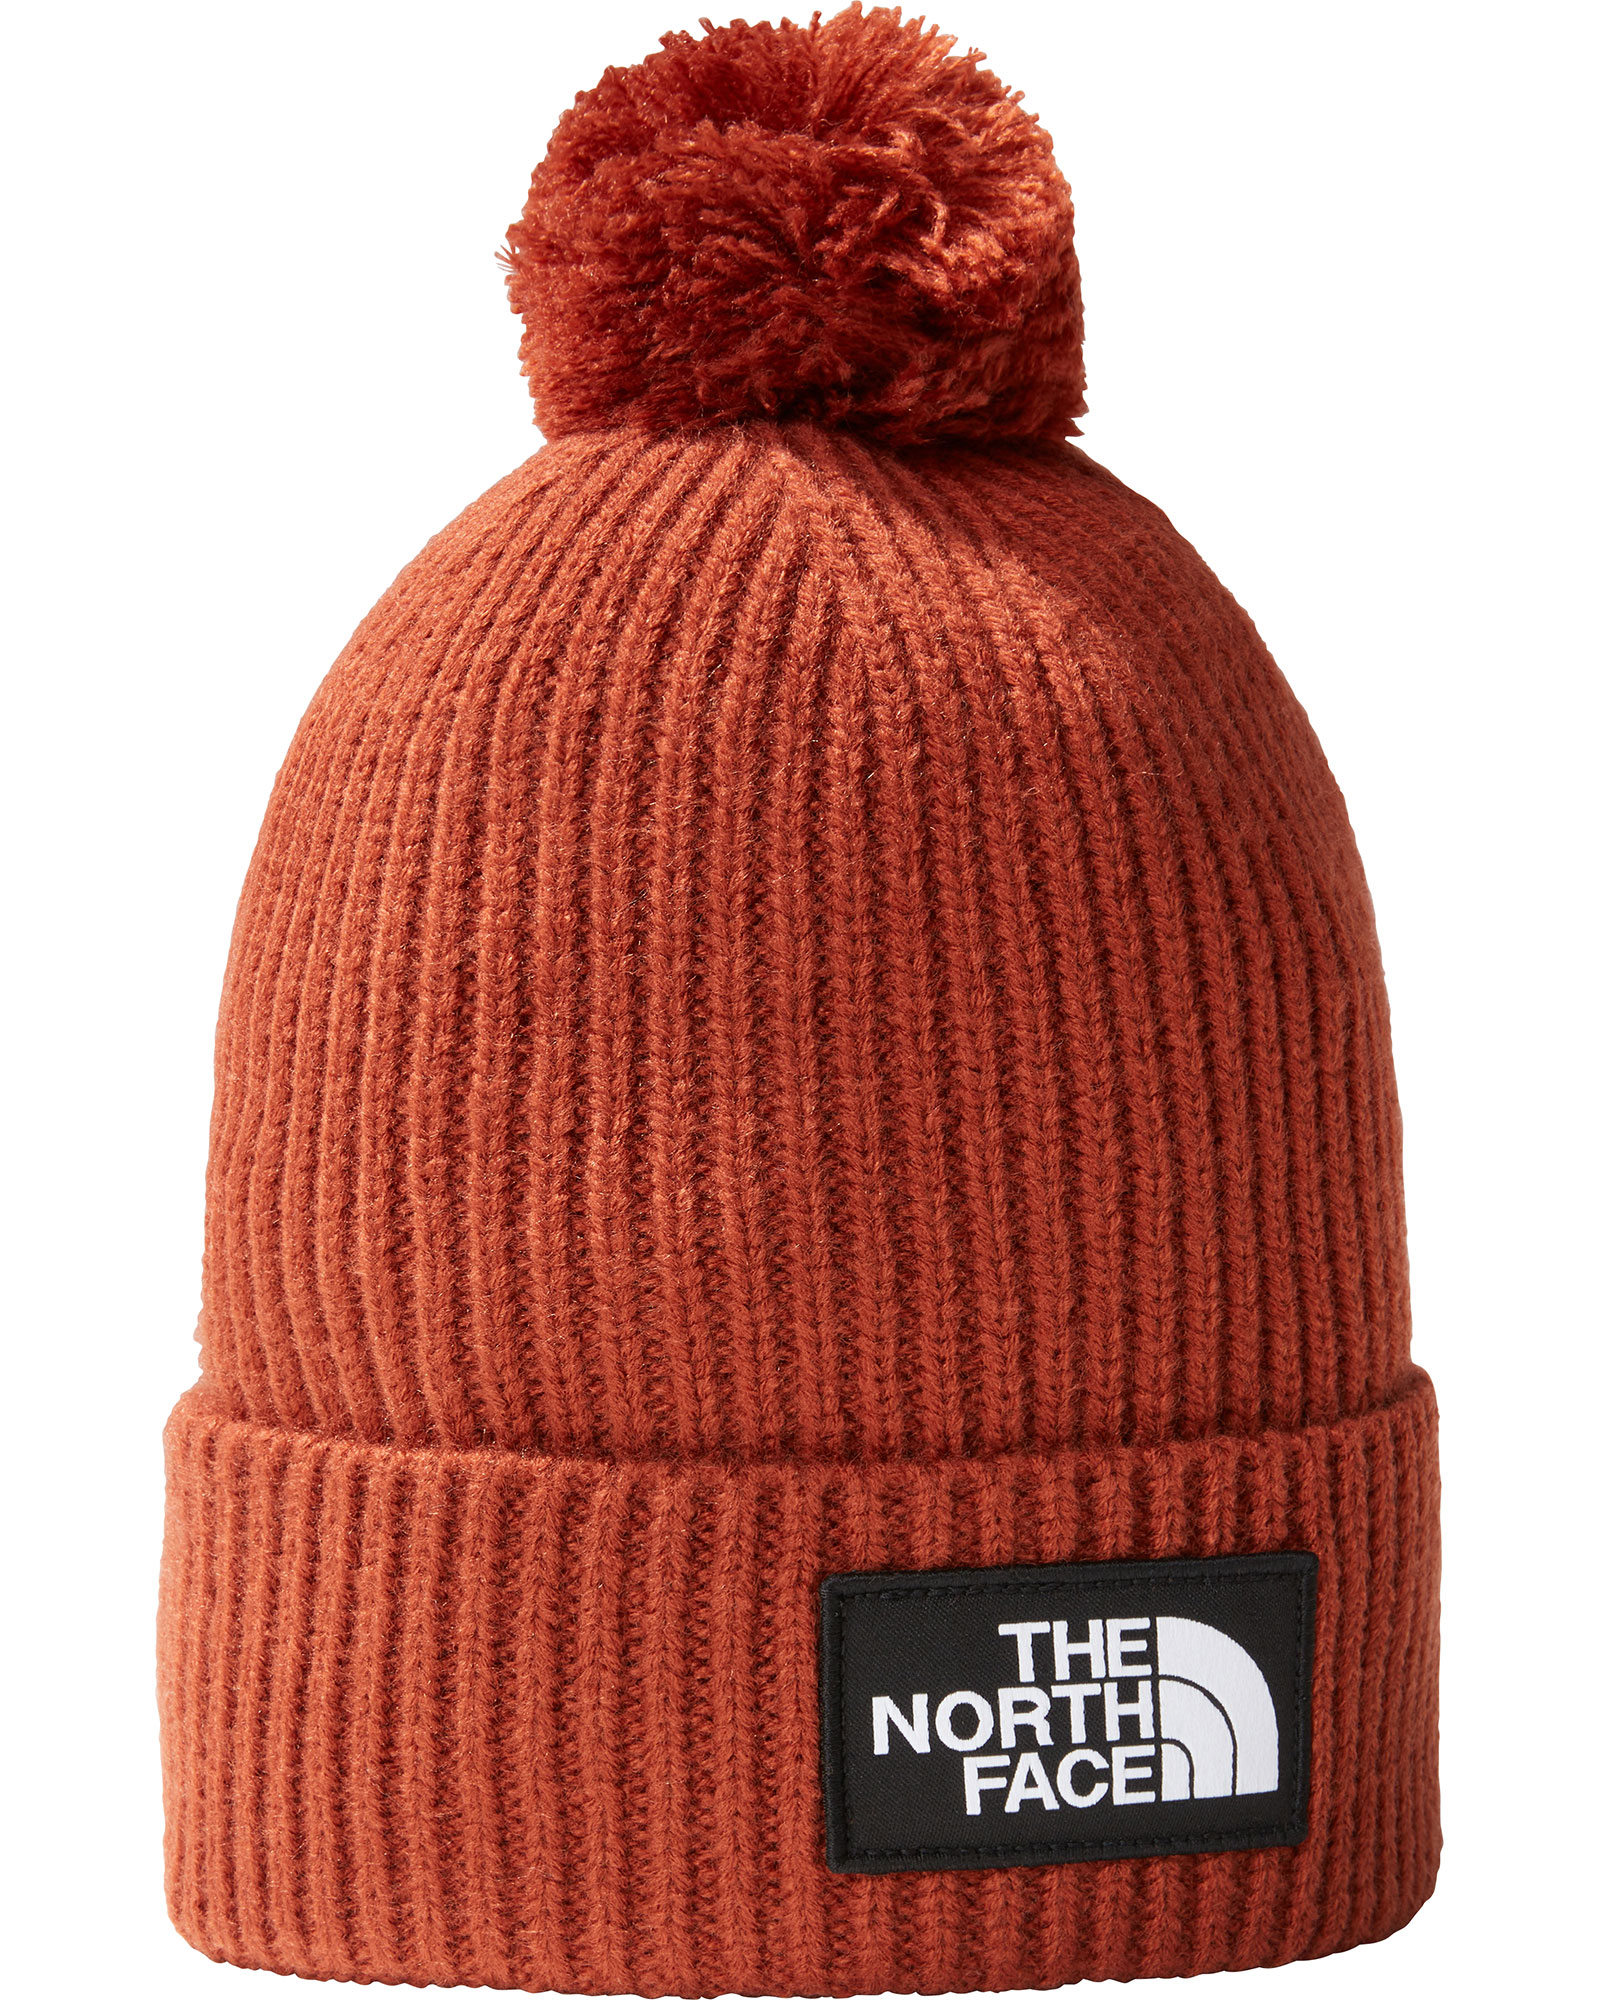 The North Face Logo Box Pom Beanie - Brandy Brown